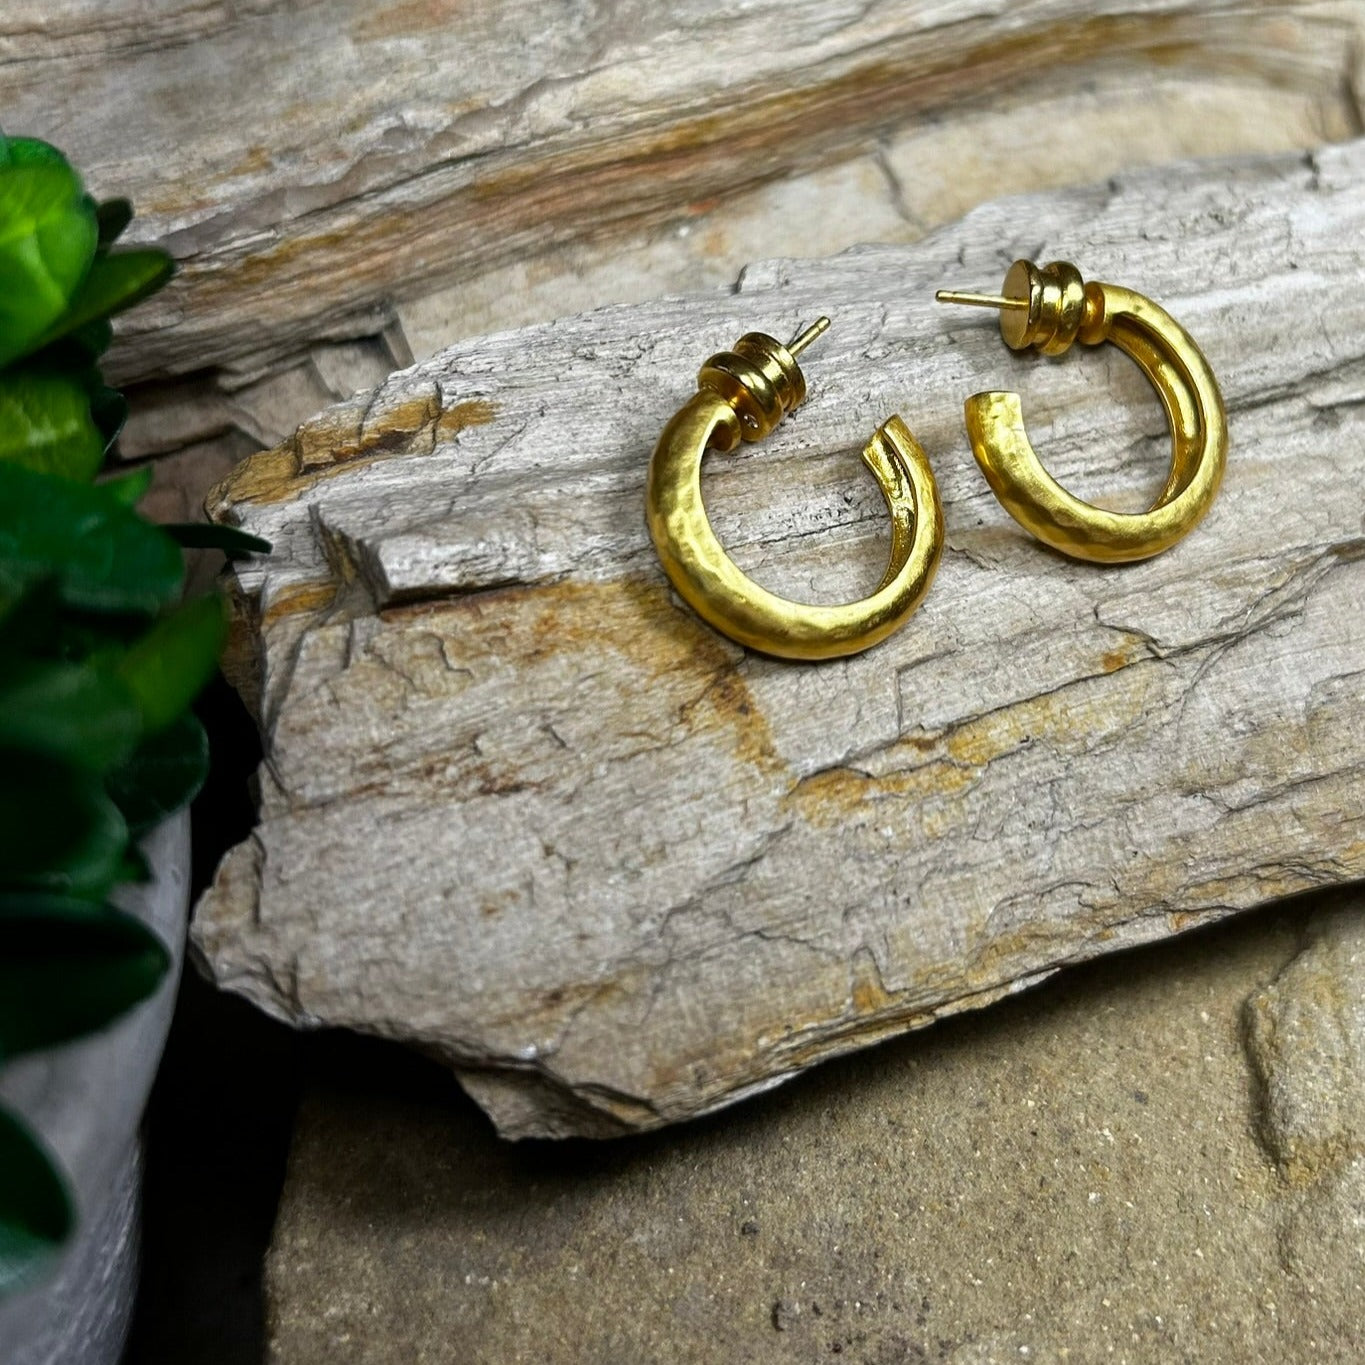 Havana Gold Hoop Earrings